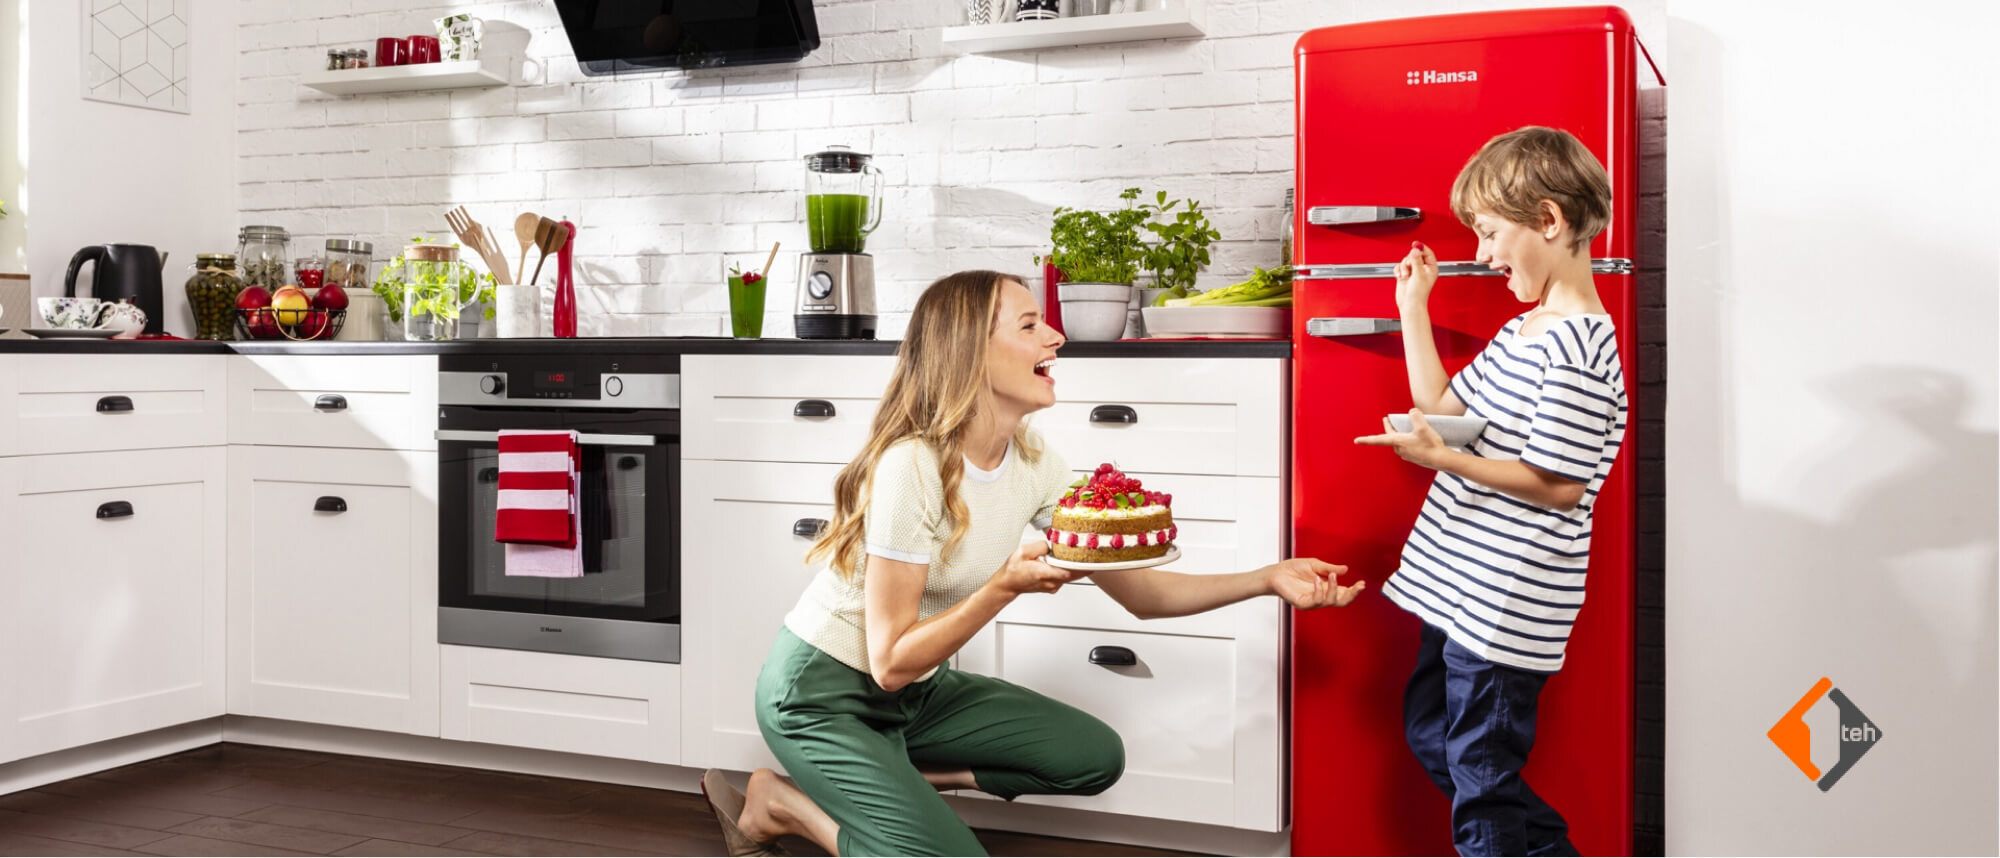 Новая коллекция холодильников Hansa 2018 года - 1teh.by